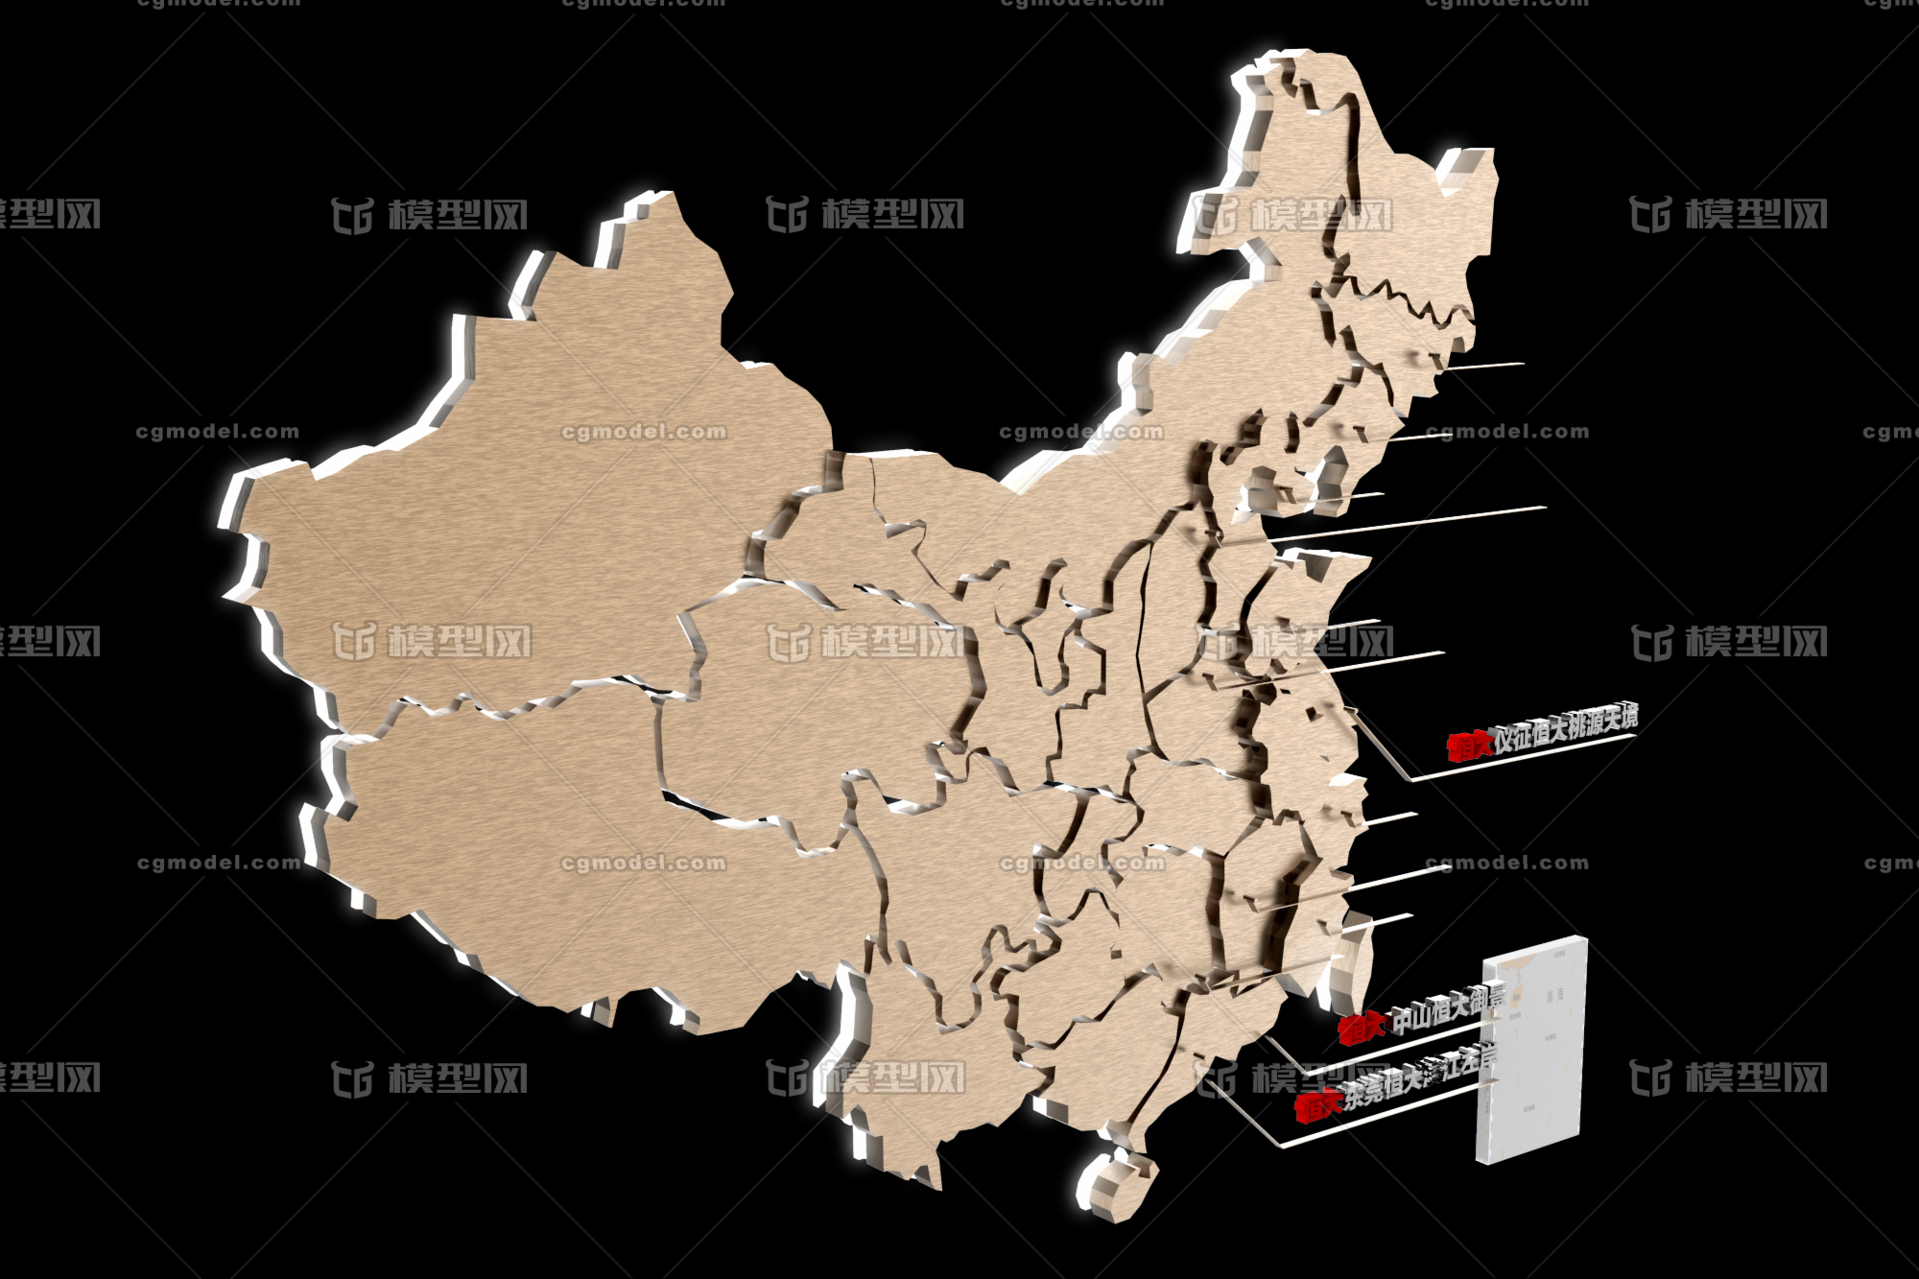 全国布局 业务版图 版图 立体版图 3d版图 中国地图 业务分布图